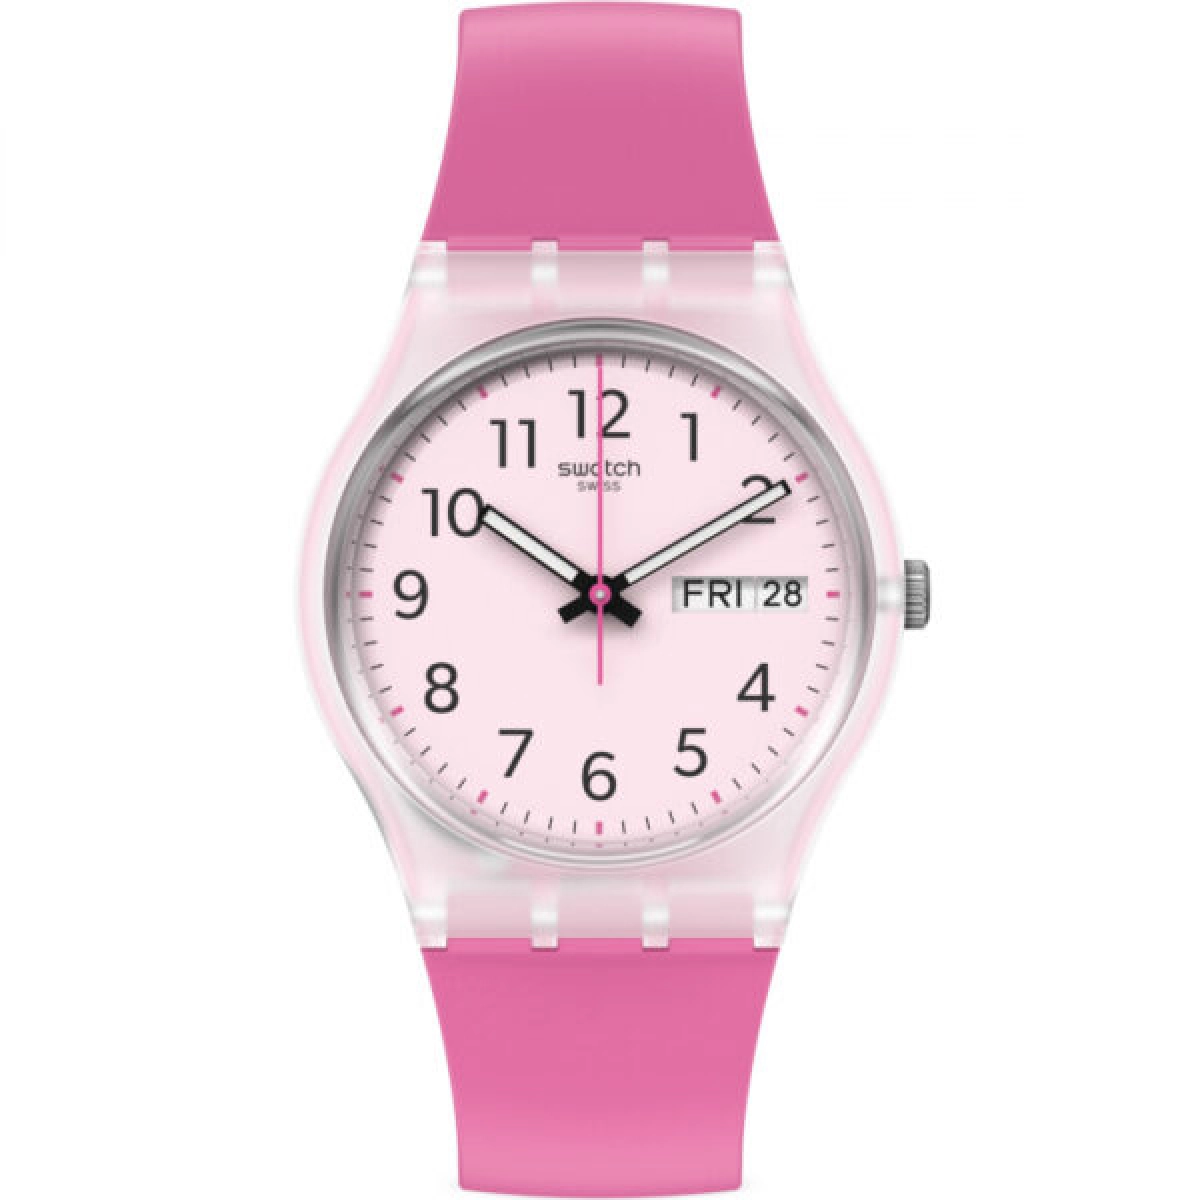 Reloj rosa rinse repeat pink ge724 Swatch